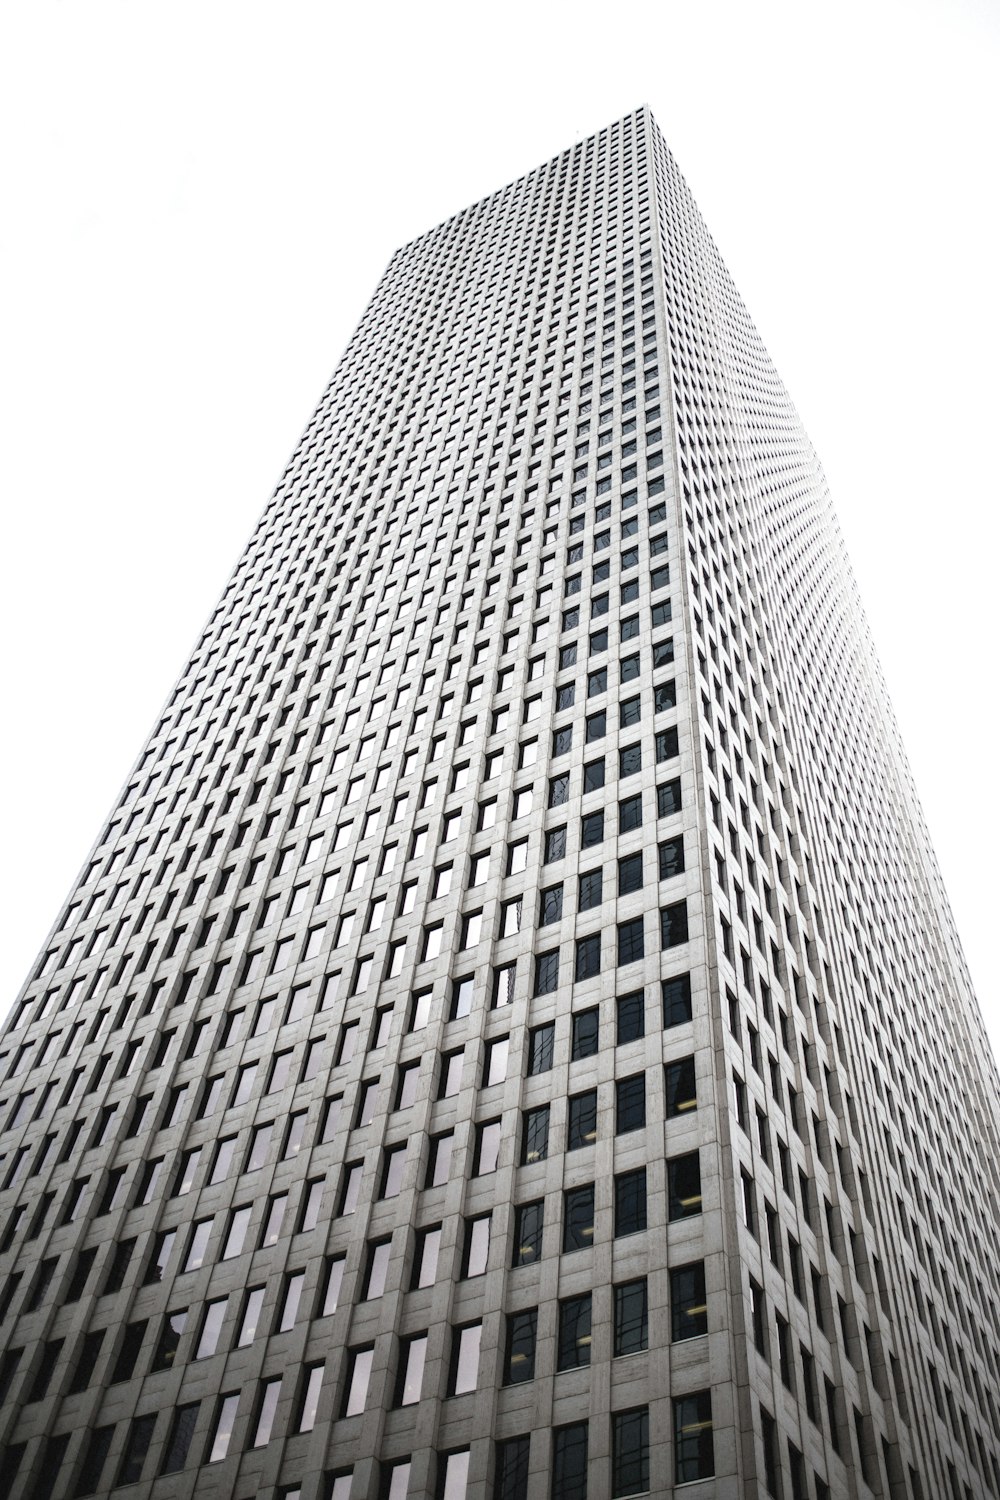 Photographie en contre-plongée d’un immeuble gris de grande hauteur